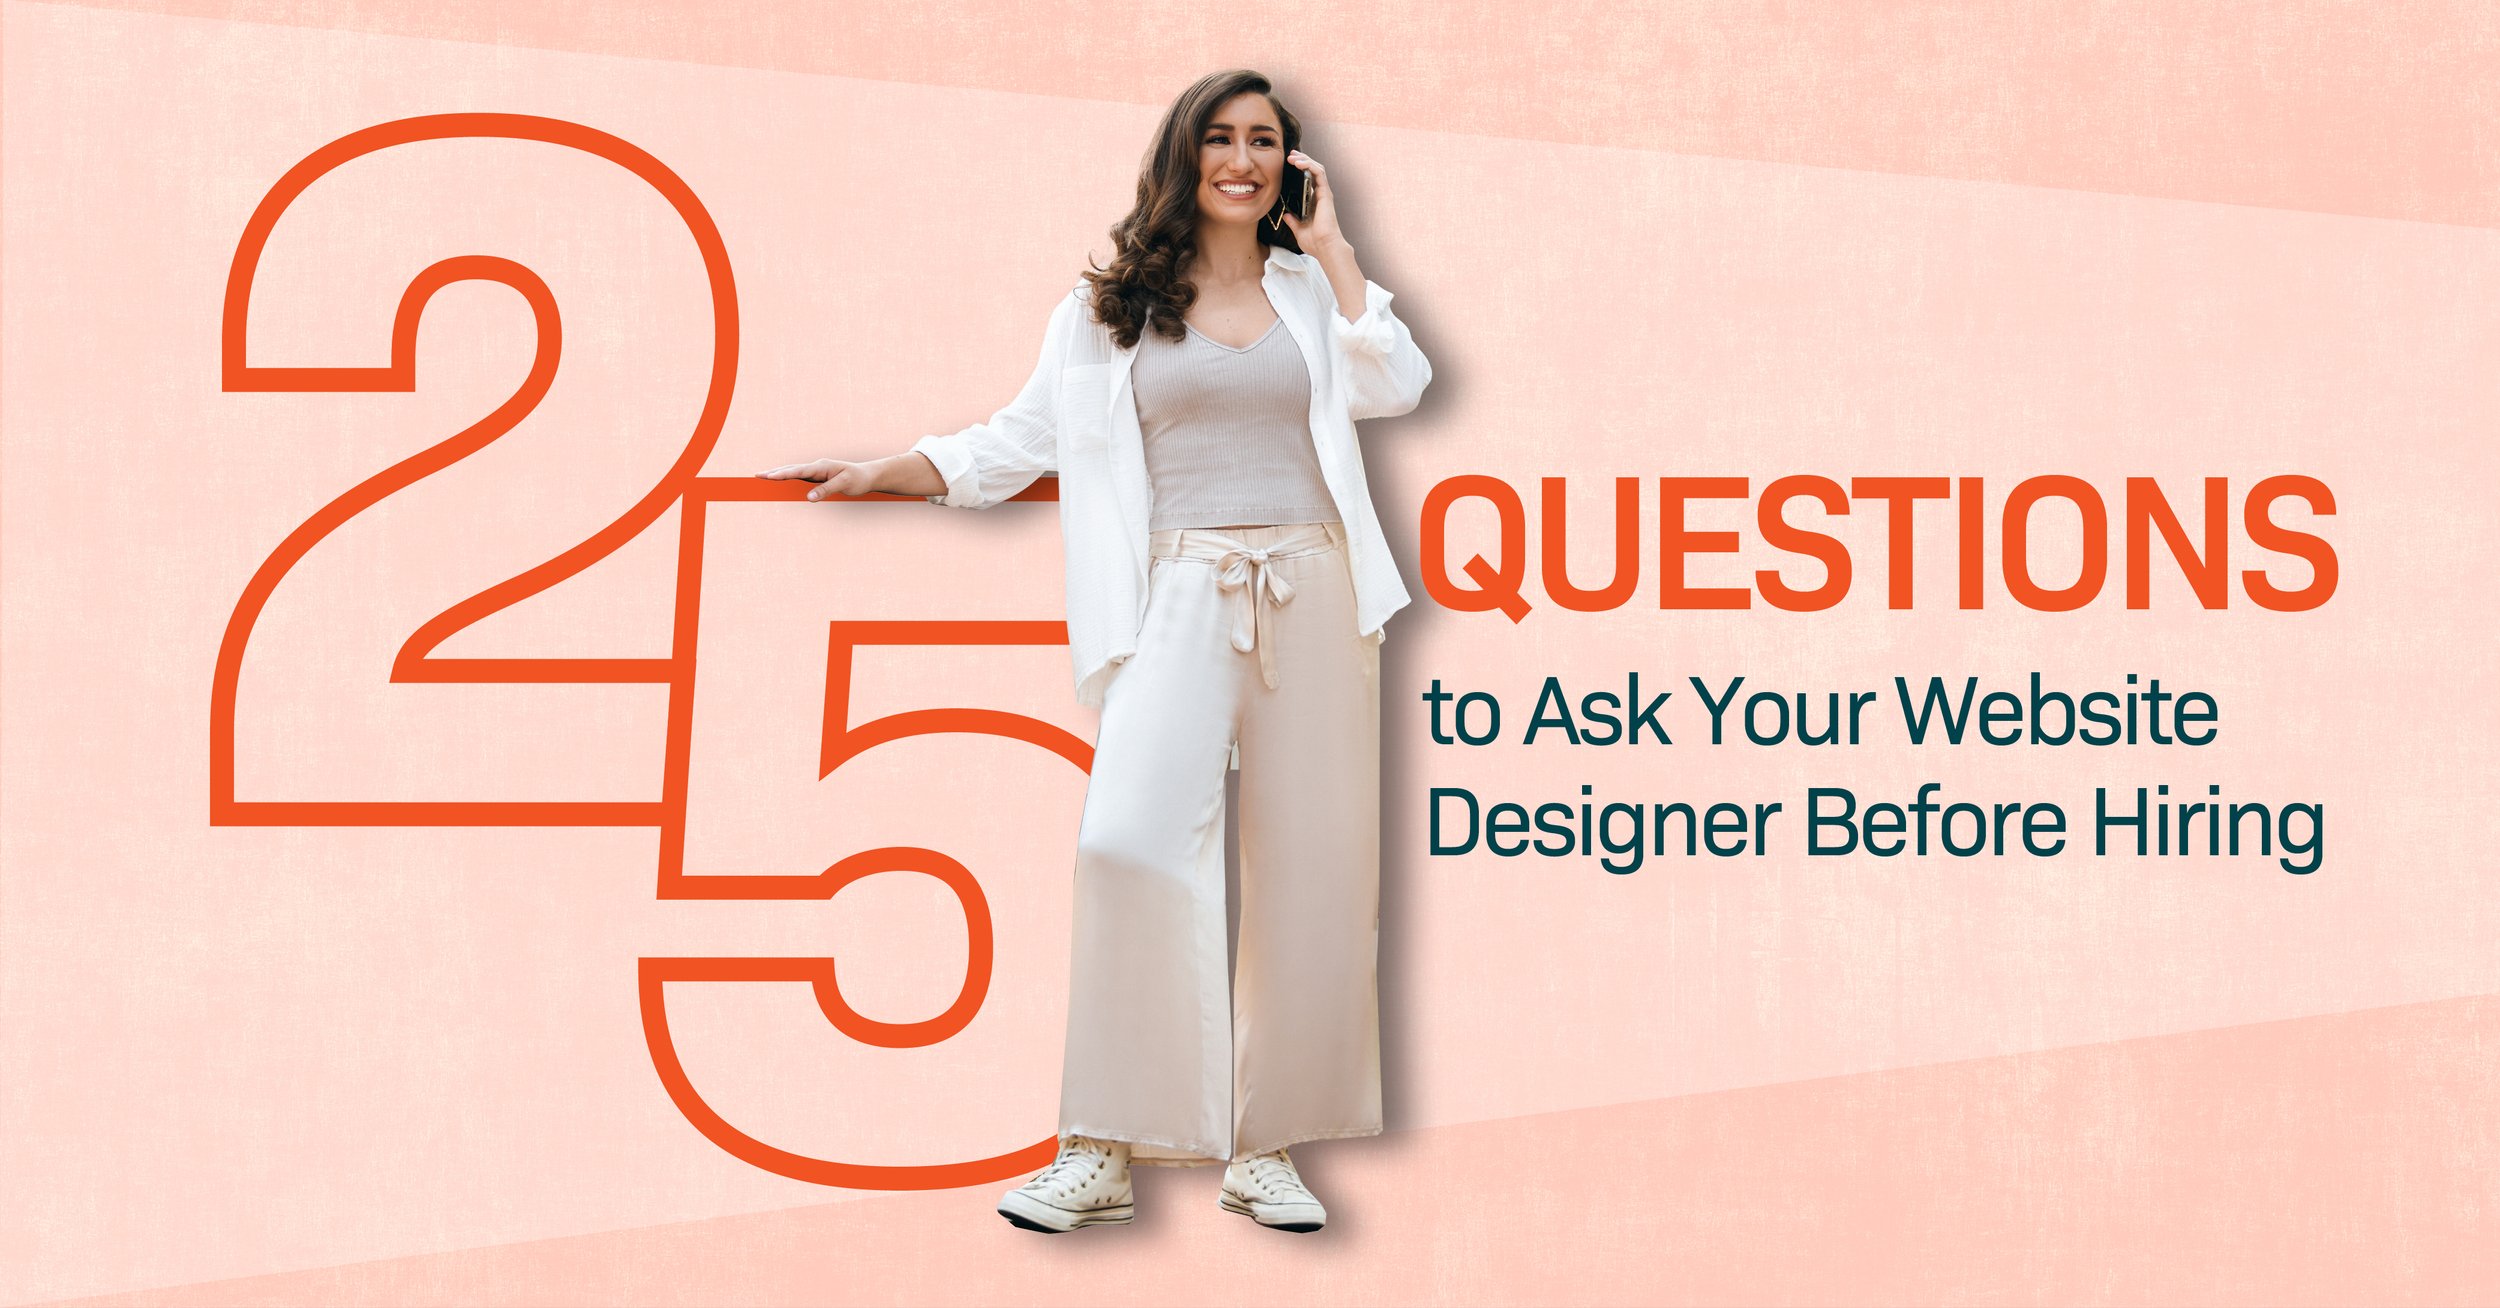 招聘前要问网站设计师的25个问题